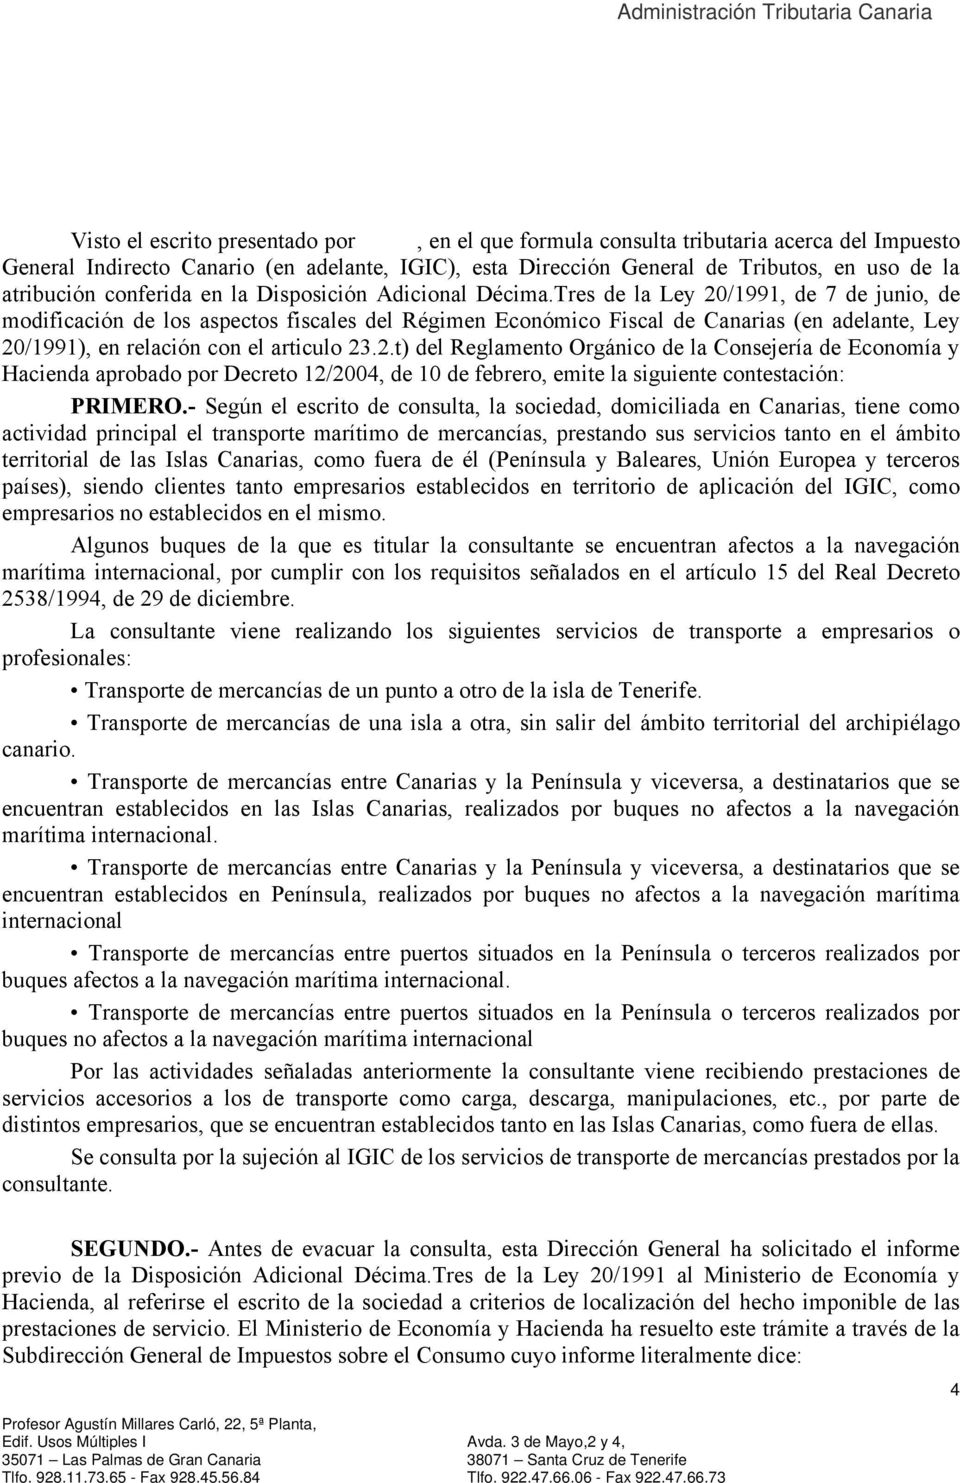 Tres de la Ley 20/1991, de 7 de junio, de modificación de los aspectos fiscales del Régimen Económico Fiscal de Canarias (en adelante, Ley 20/1991), en relación con el articulo 23.2.t) del Reglamento Orgánico de la Consejería de Economía y Hacienda aprobado por Decreto 12/2004, de 10 de febrero, emite la siguiente contestación: PRIMERO.